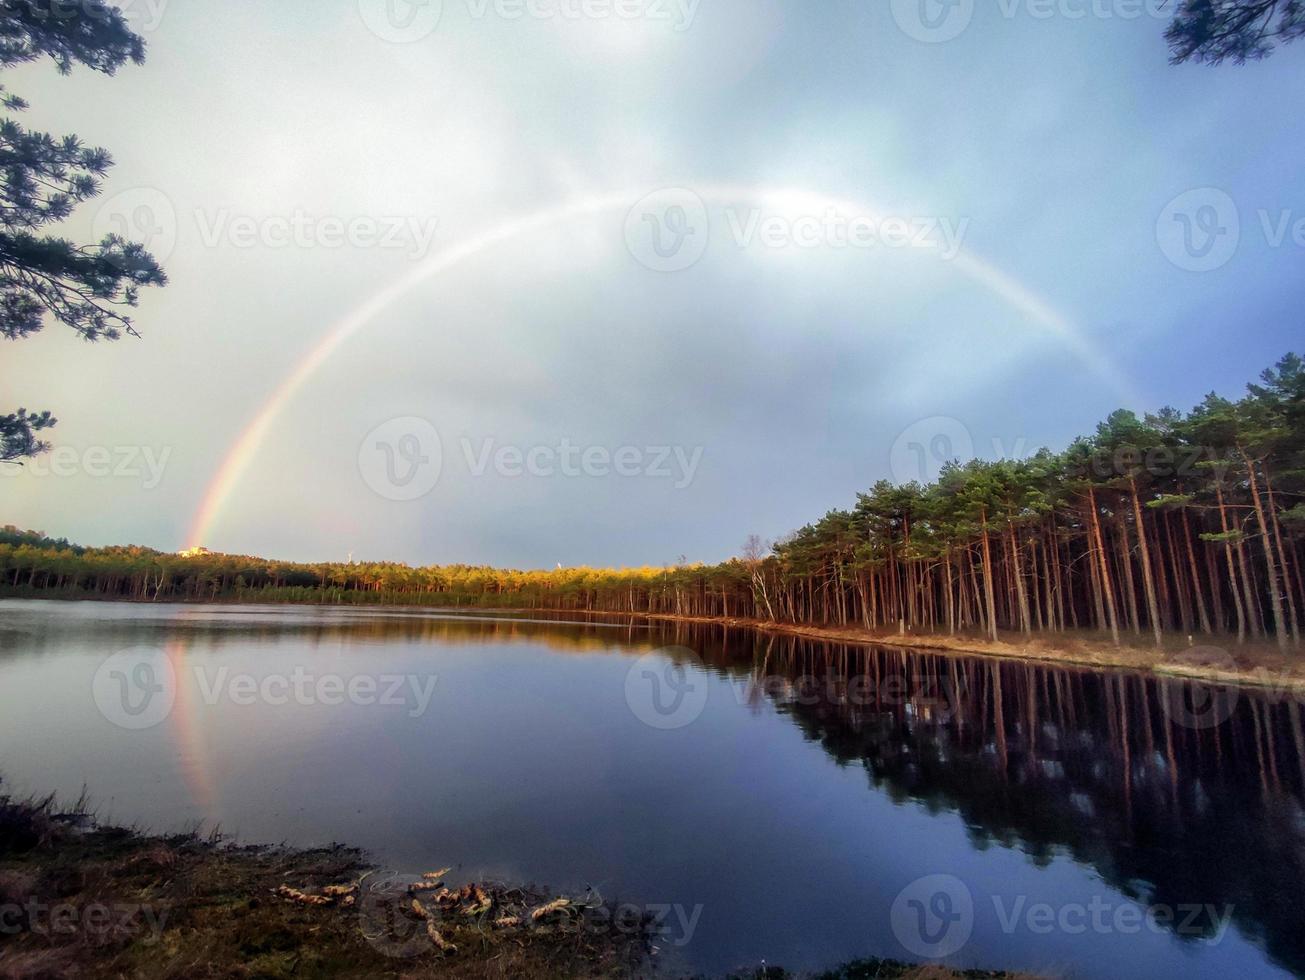 lago dopo la pioggia con un arcobaleno su di esso in una sera d'estate con la riflessione della foresta in acqua tranquilla foto